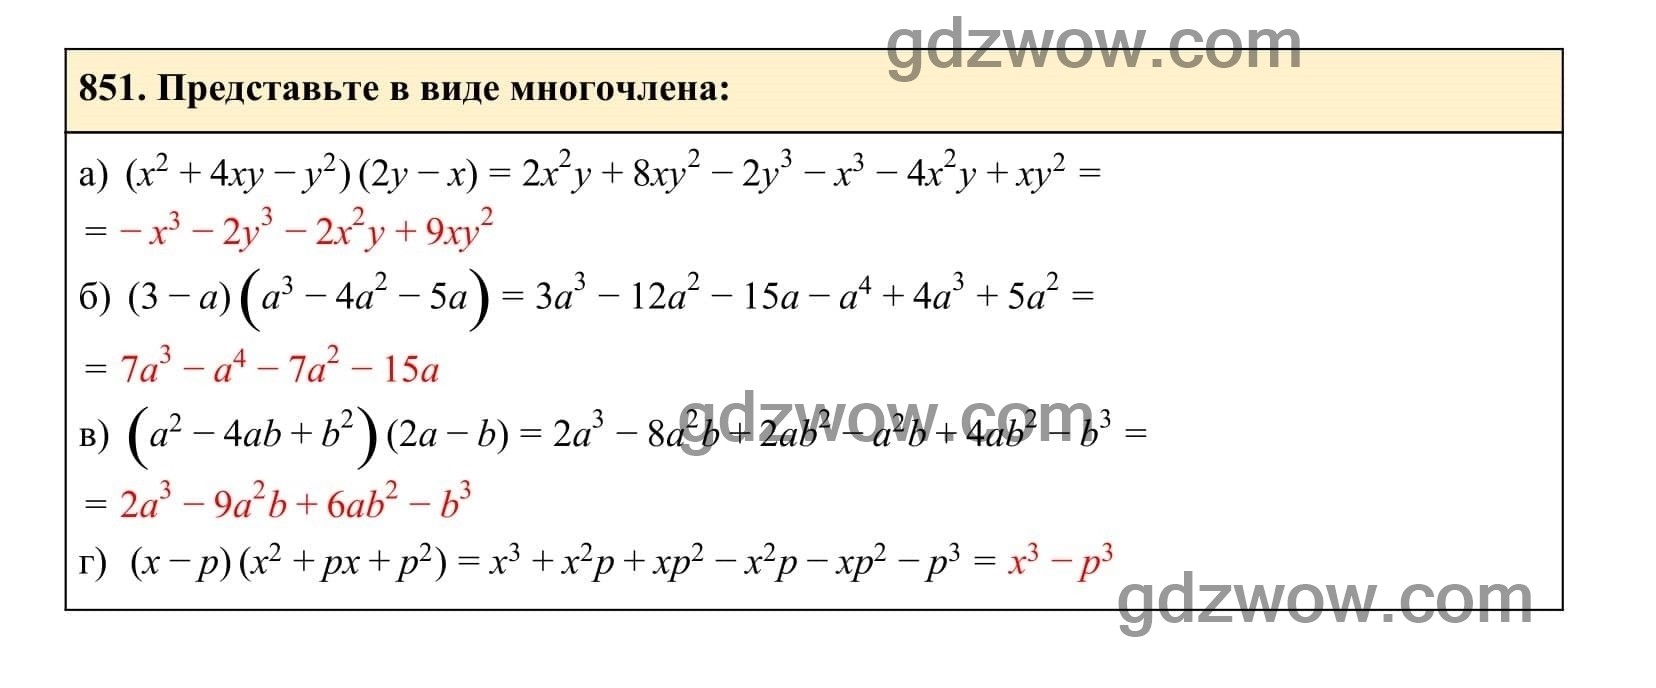 Упражнение 851 - ГДЗ по Алгебре 7 класс Учебник Макарычев (решебник) - GDZwow